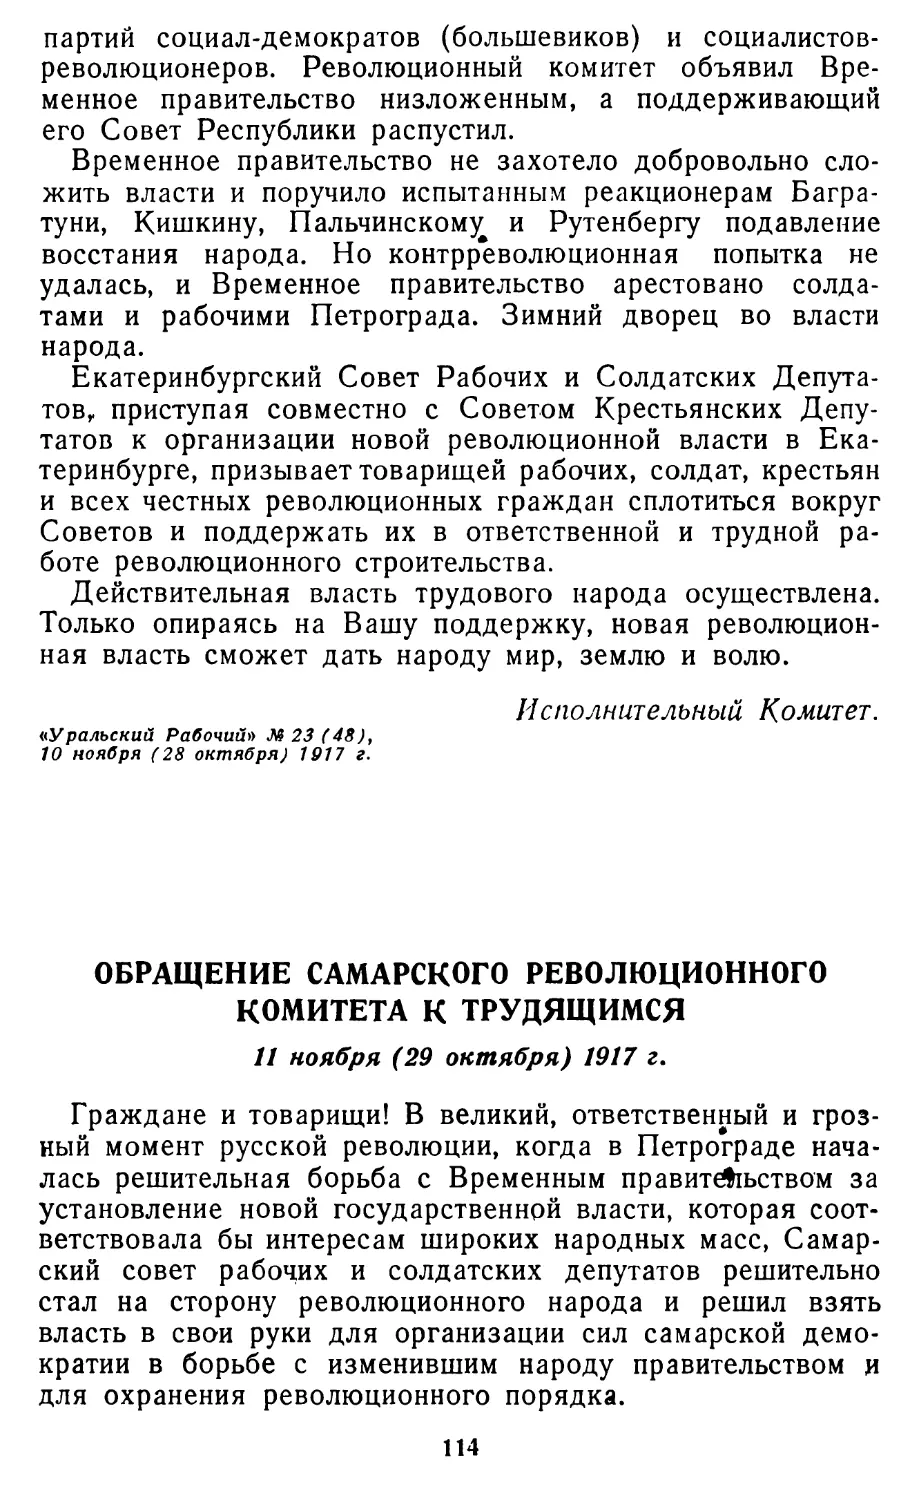 Обращение Самарского революционного комитета к трудящимся